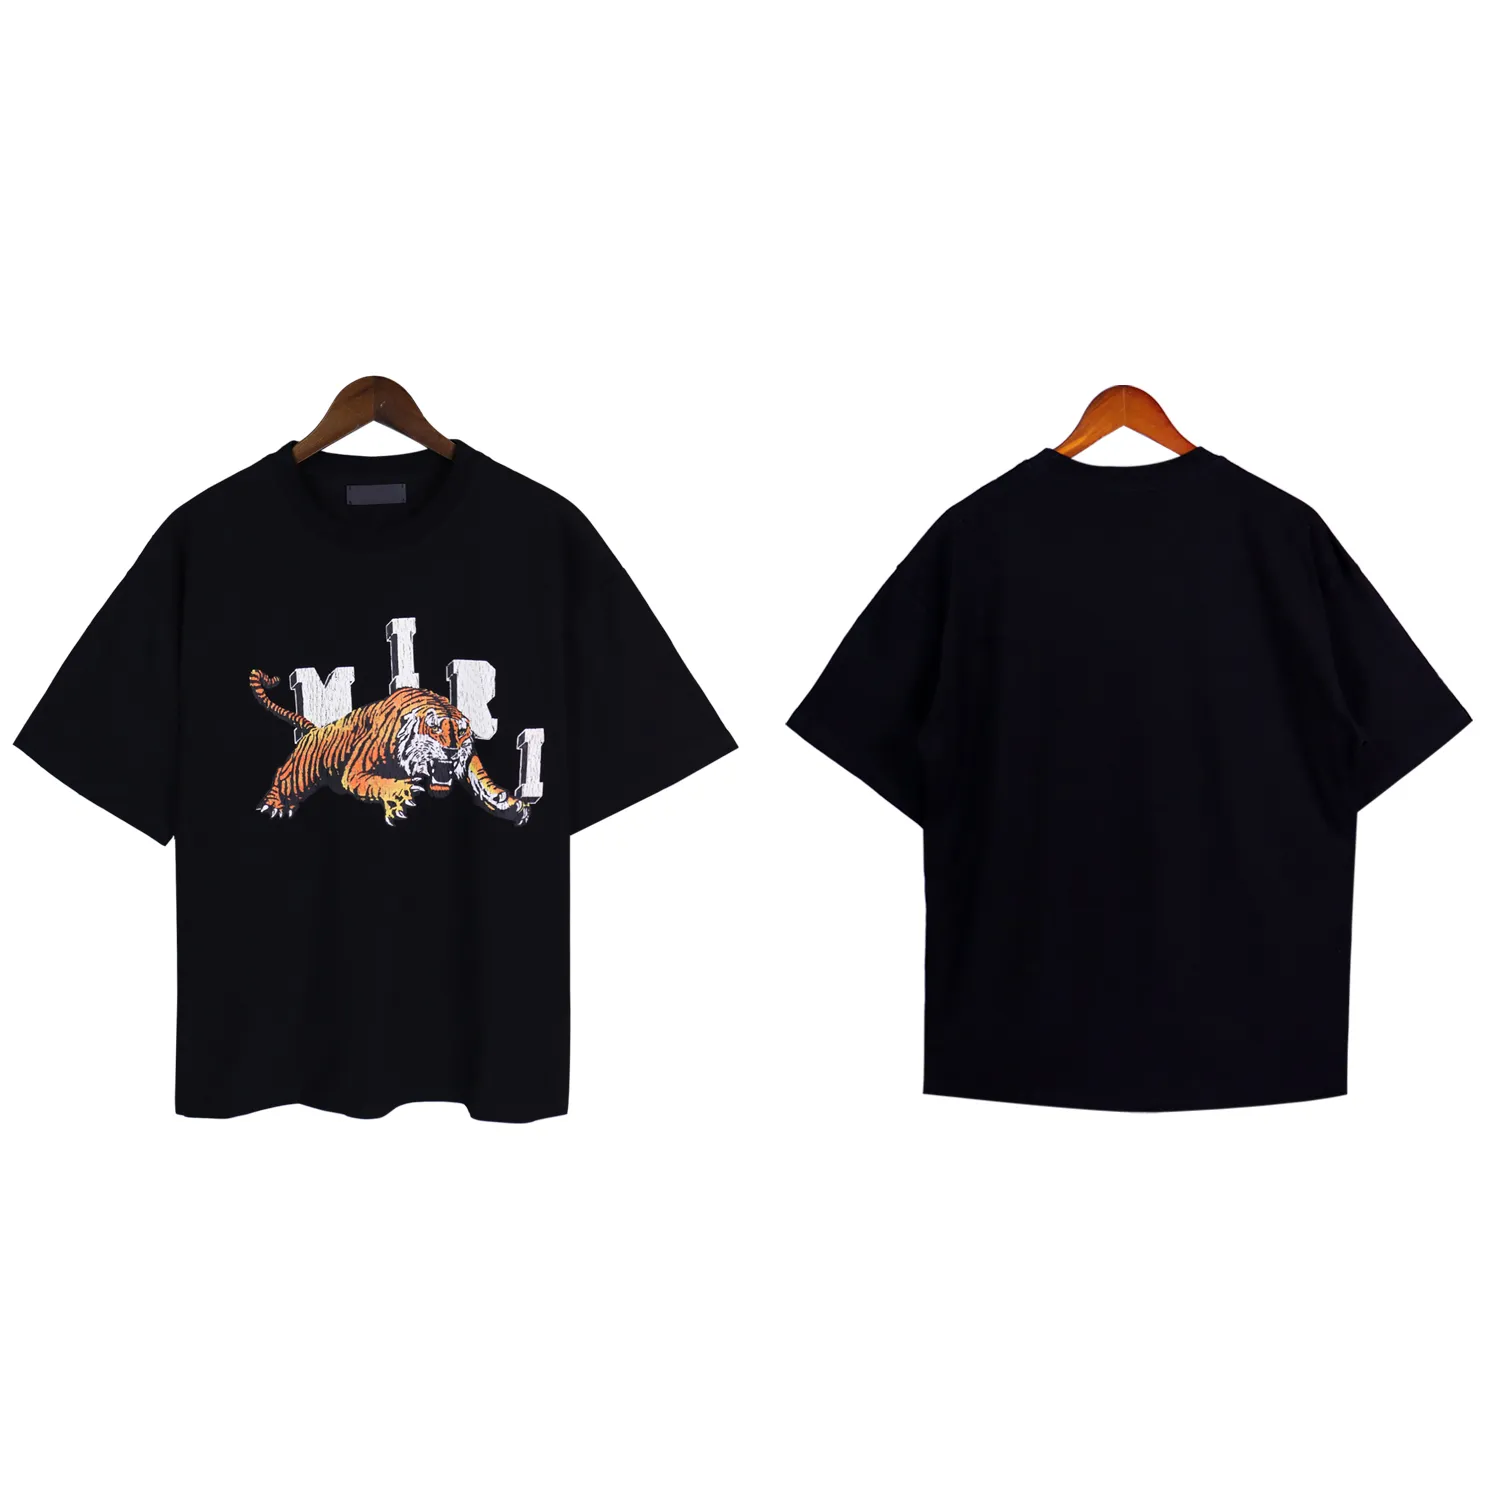 Noir Blanc Été T-shirts Hommes Designer T-shirts Lâche Coton Vêtements À Manches Courtes Mode Casual Hip Hop Streetwear Tee Shirt Taille M-Xxxl 444